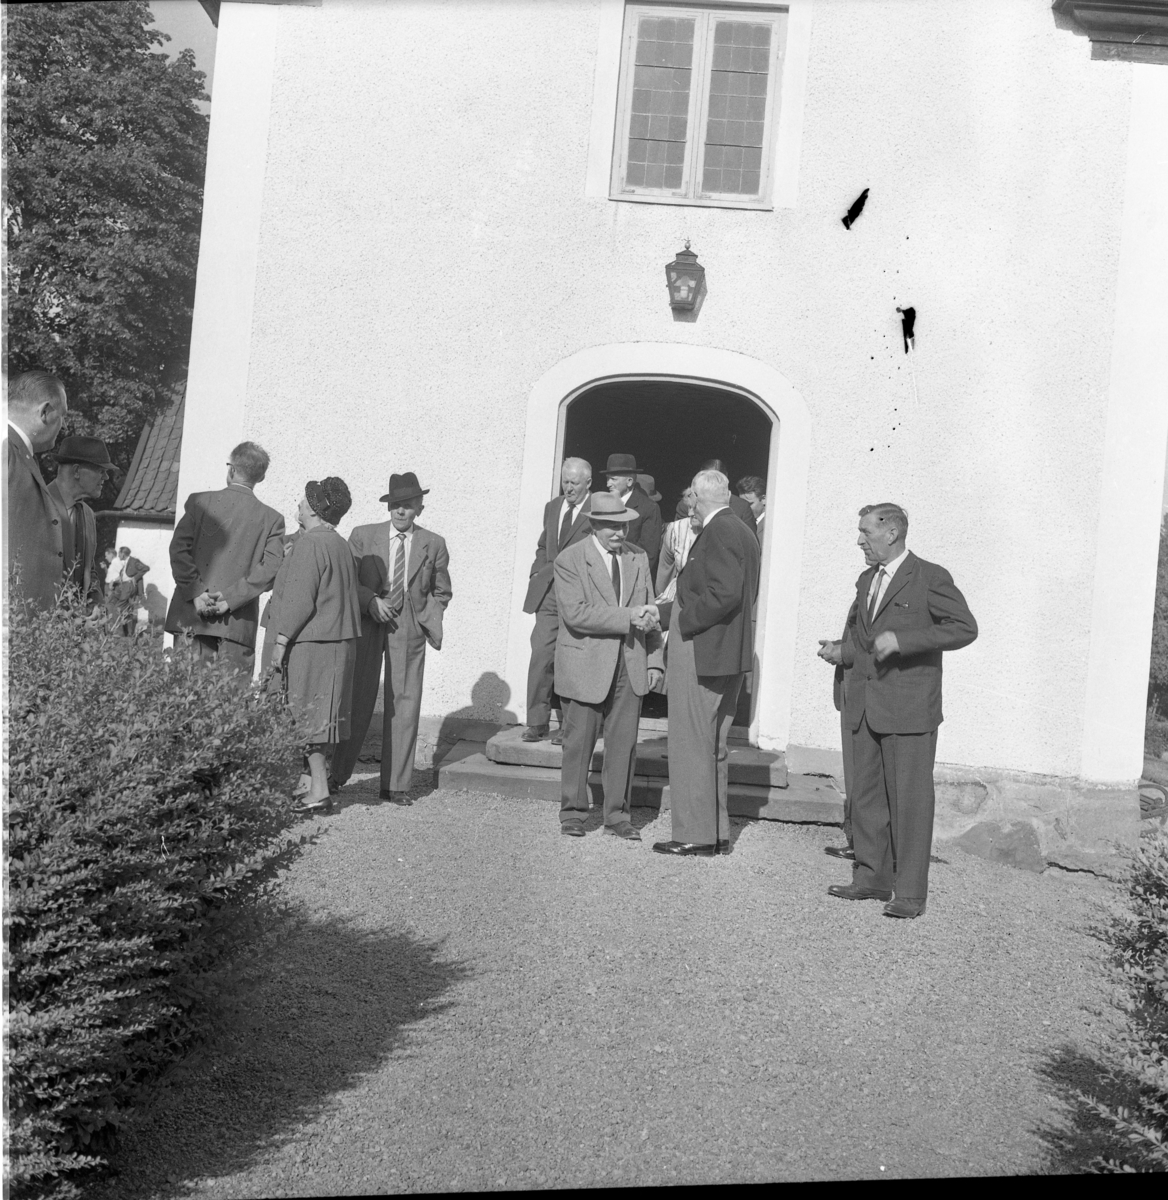 "De gamlas dag" i Gränna har utfärd till Sandseryd. Oidentiferade äldre män och kvinnor kliver ut ur kyrkan. Mannen till vänster med hatt är troligen Nils Nilsson ("Nisse på Rota")